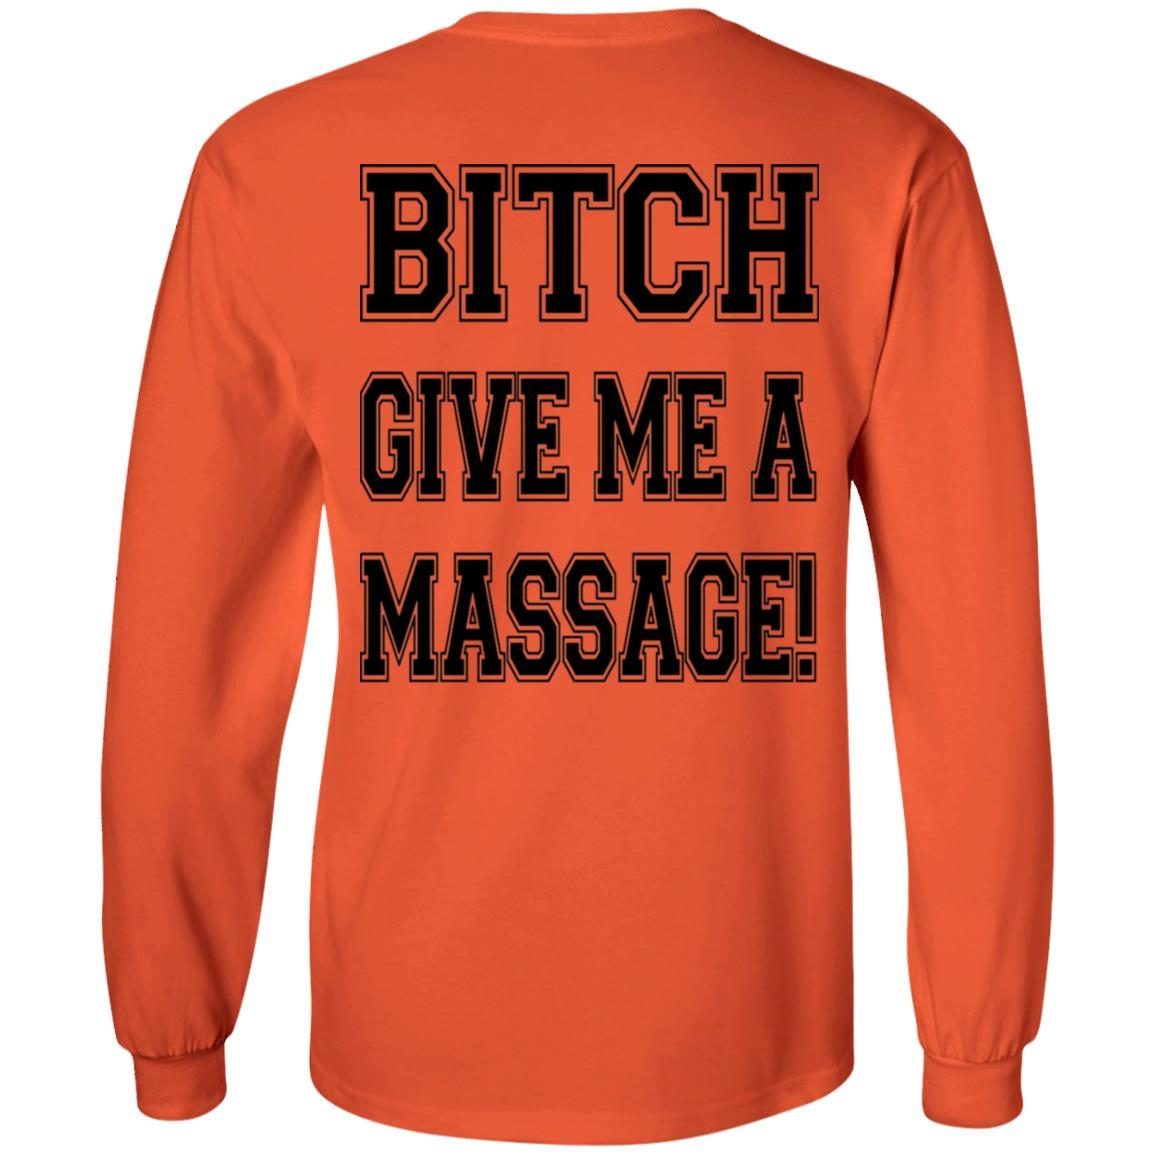 B*tch Give Me A Massage shirt 2